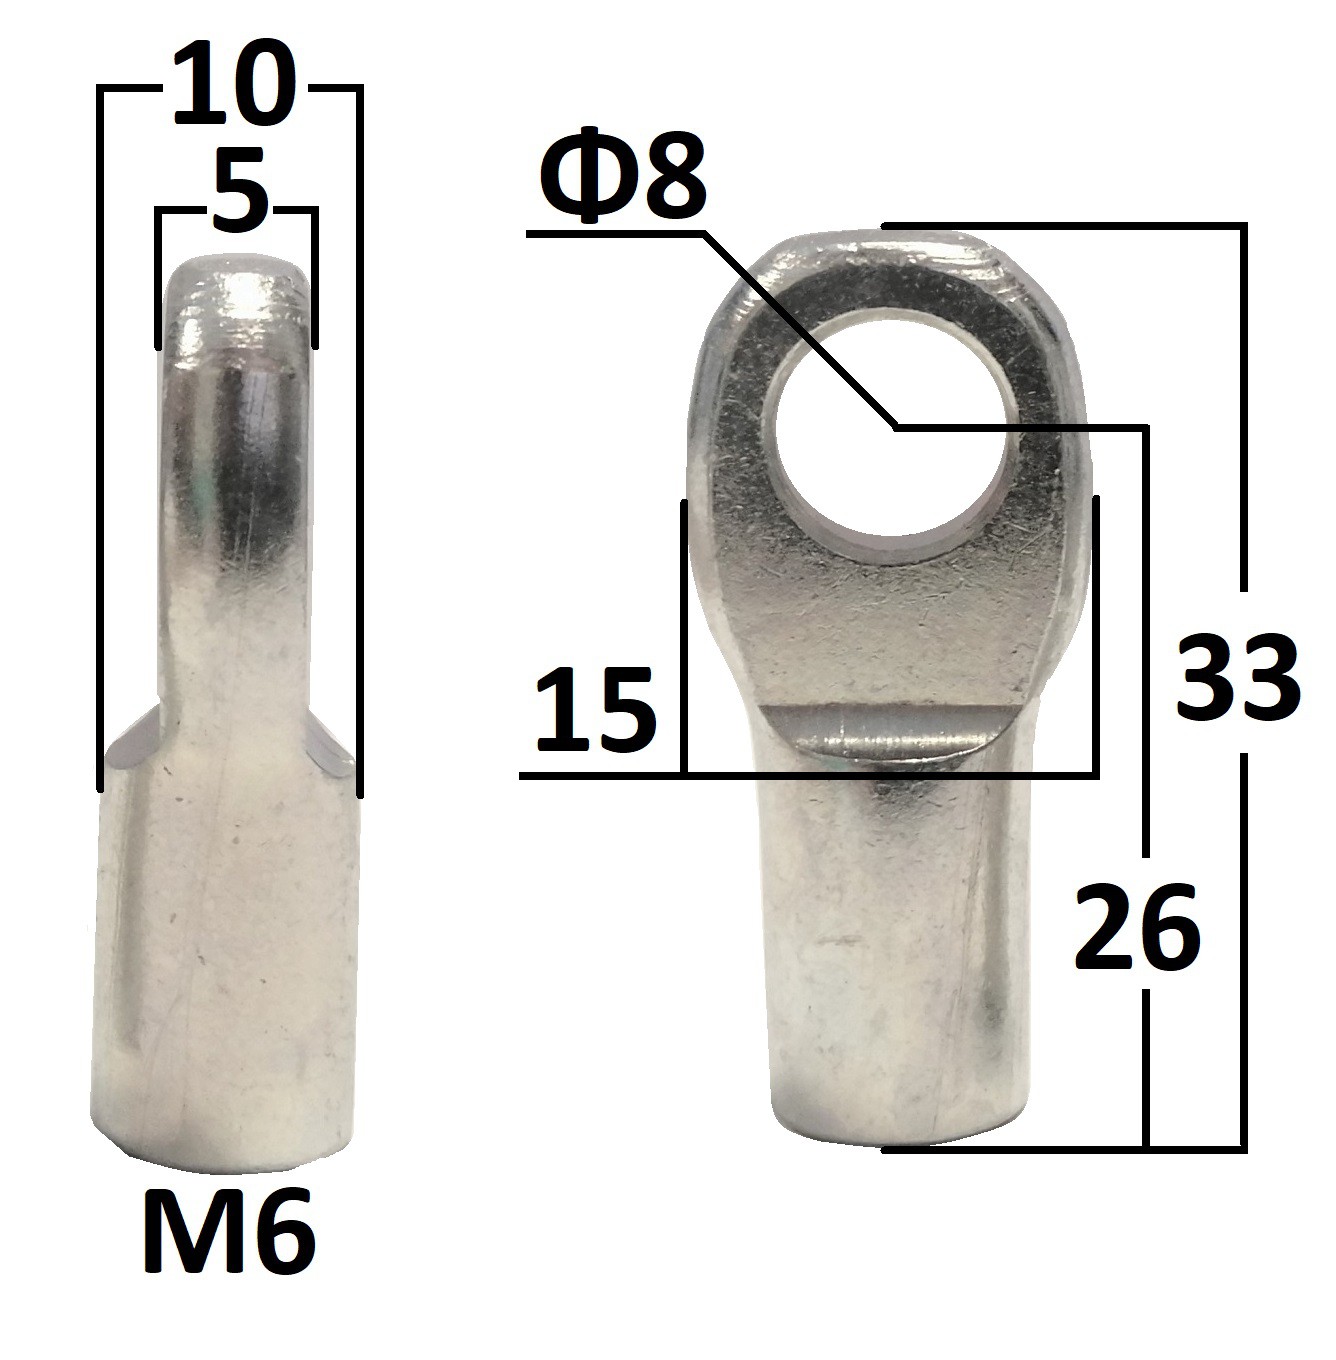 Przegub oczkowy otwór o średnicy 8mm gwint M6 długość 26mm grubość 5mm